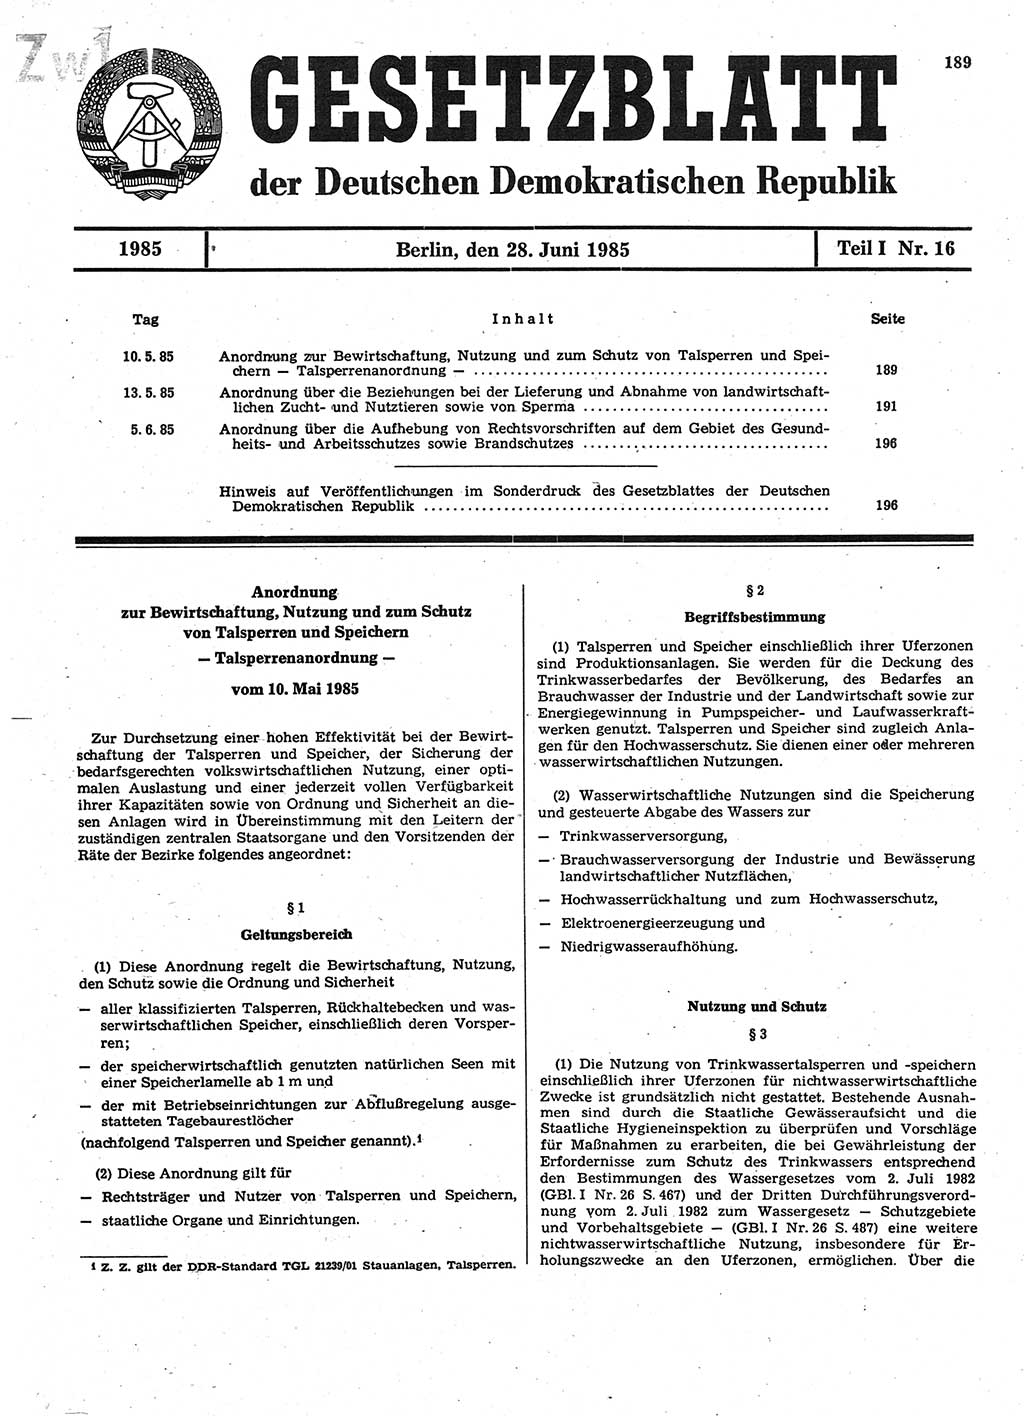 Gesetzblatt (GBl.) der Deutschen Demokratischen Republik (DDR) Teil Ⅰ 1985, Seite 189 (GBl. DDR Ⅰ 1985, S. 189)